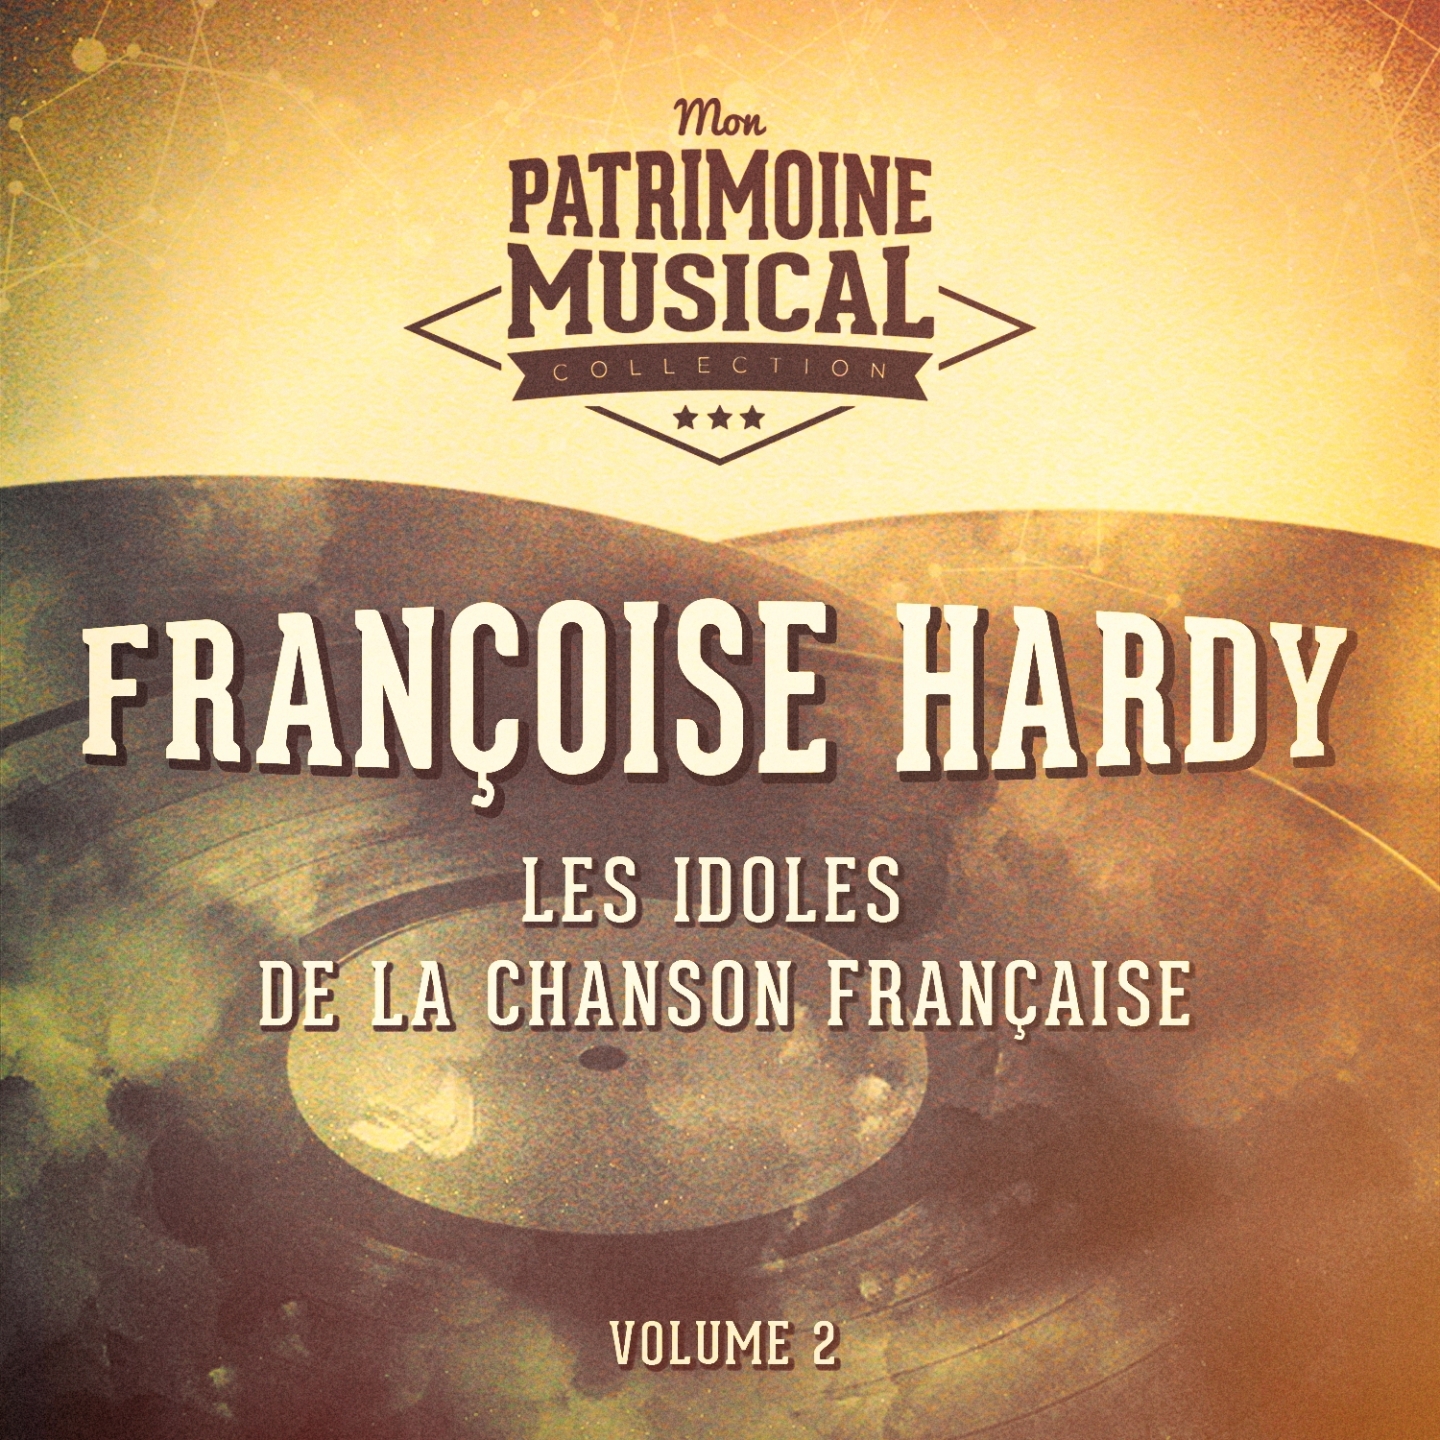 Les idoles de la chanson fran aise : Fran oise Hardy, Vol. 1